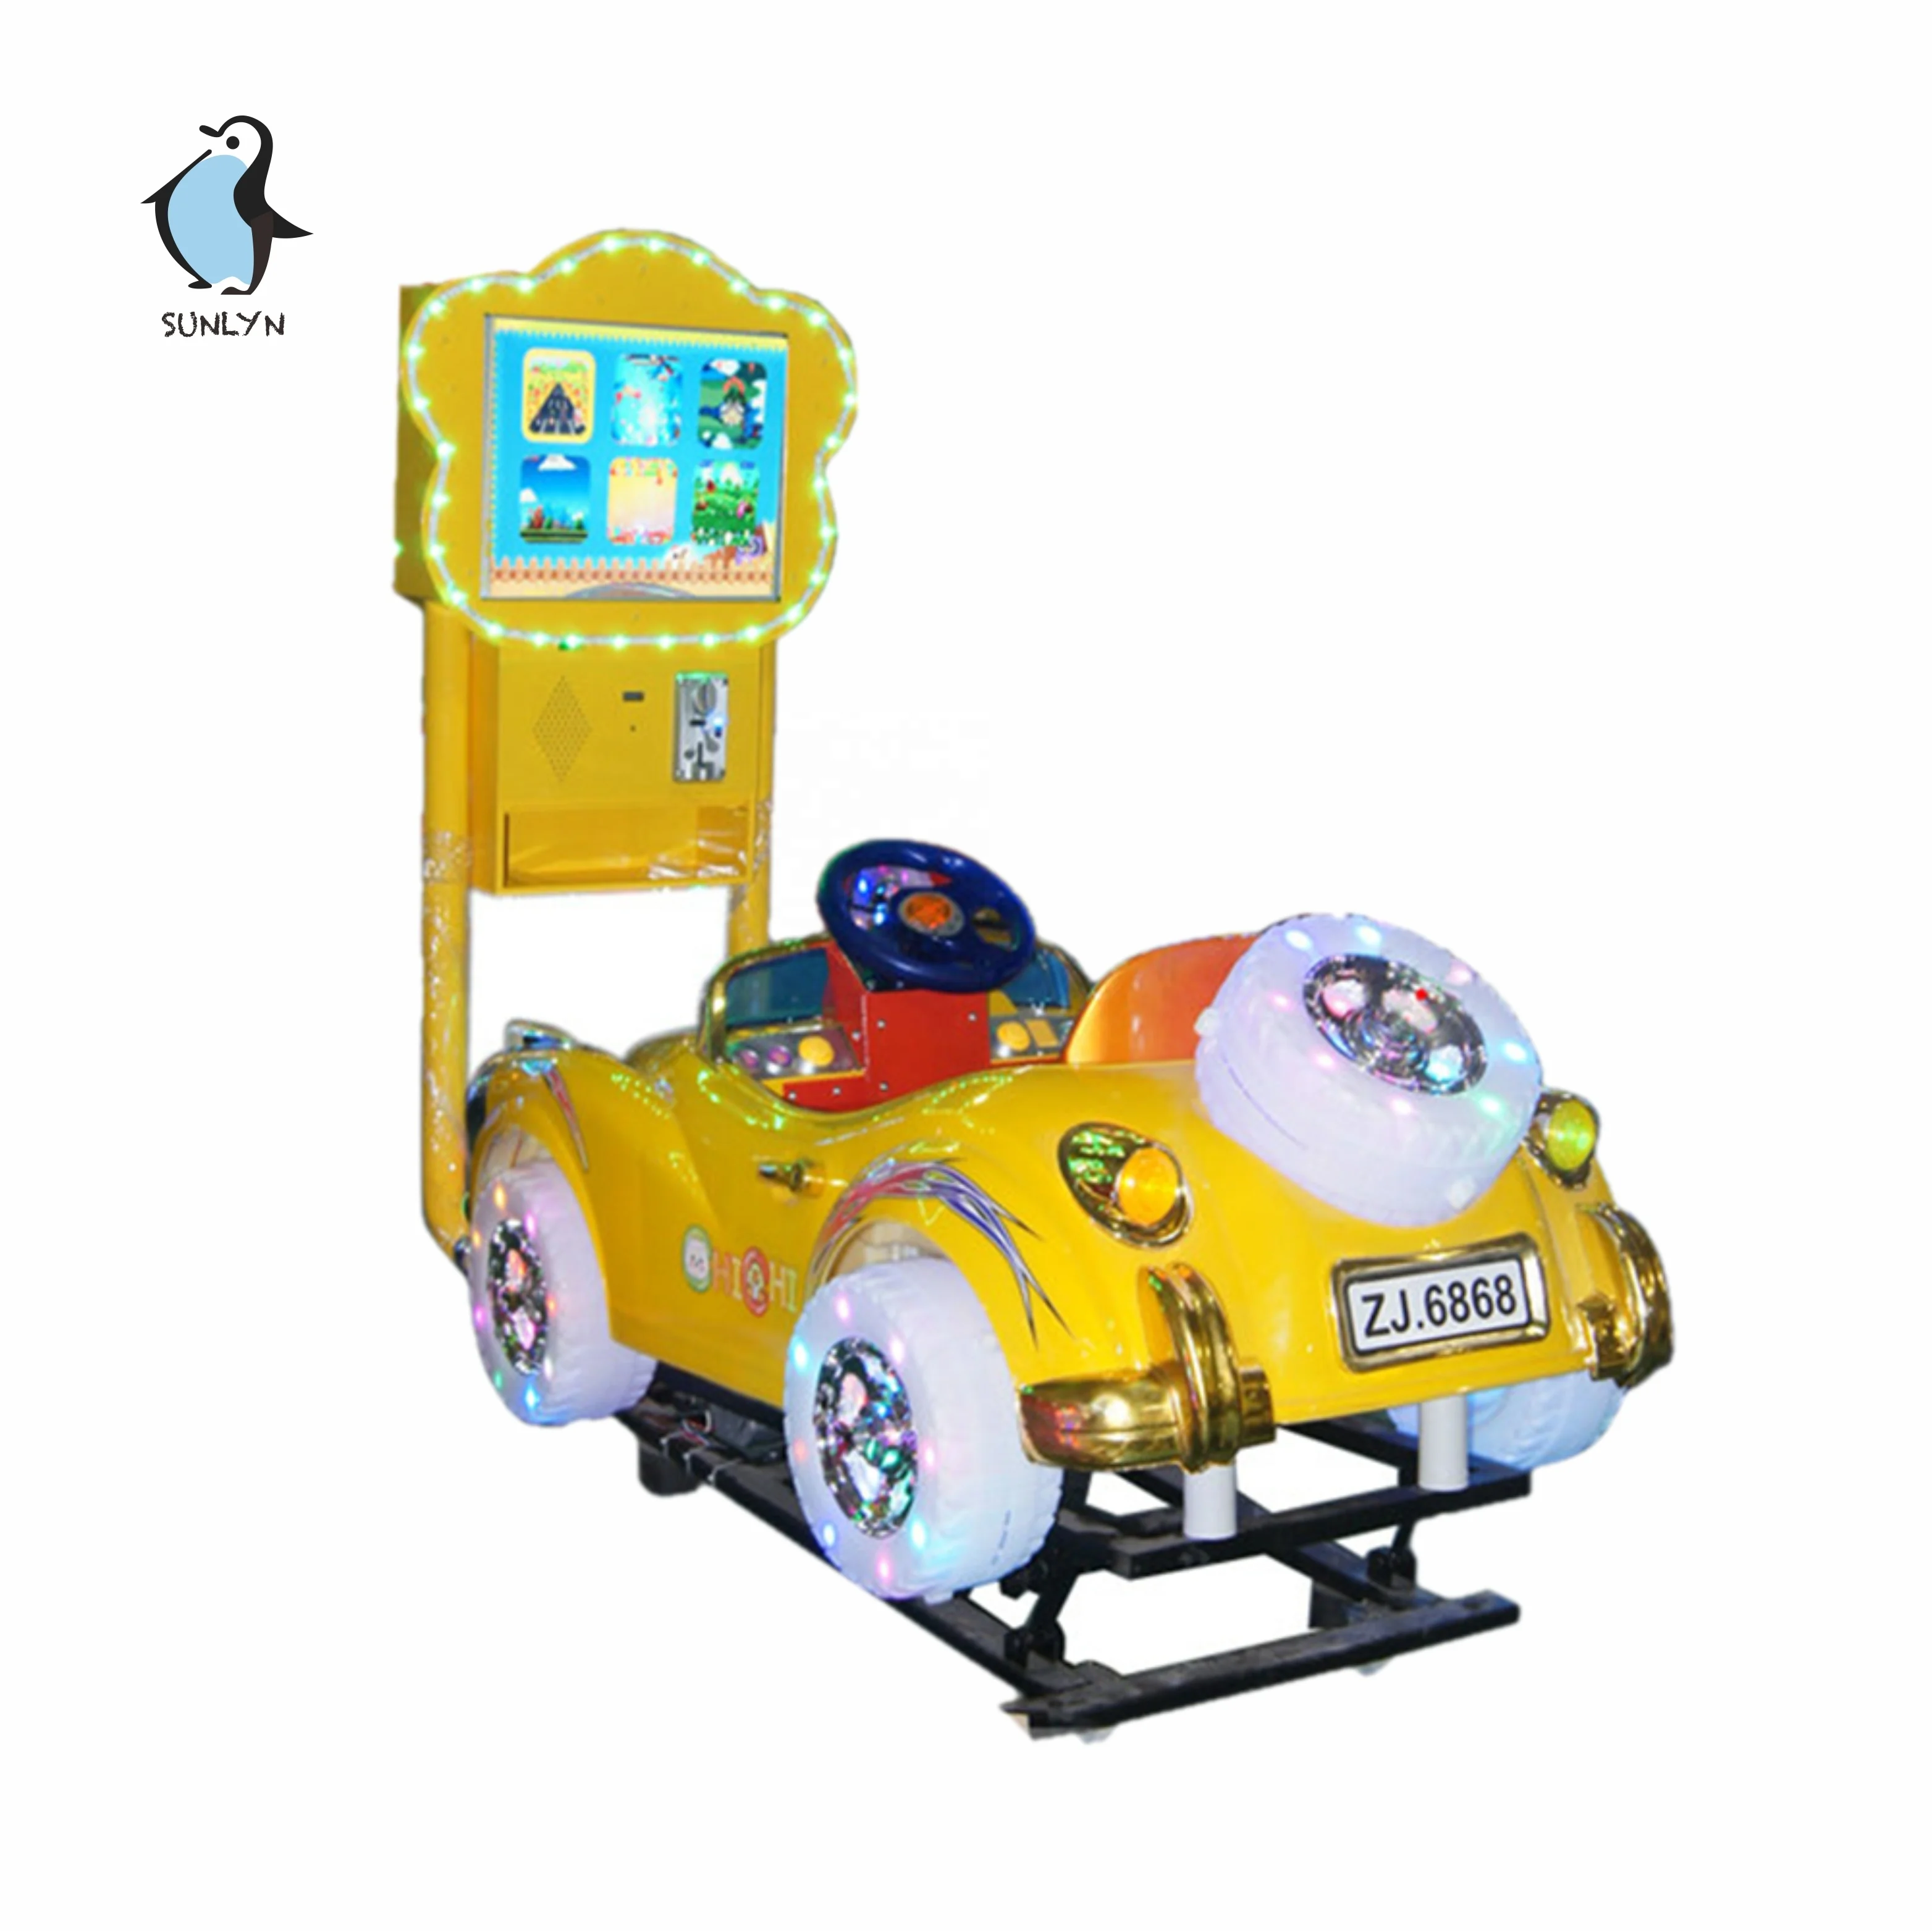 Grande schermo di Auto D'epoca per bambini giro elettronico coperta distributore automatico di parrucca wag macchine da gioco